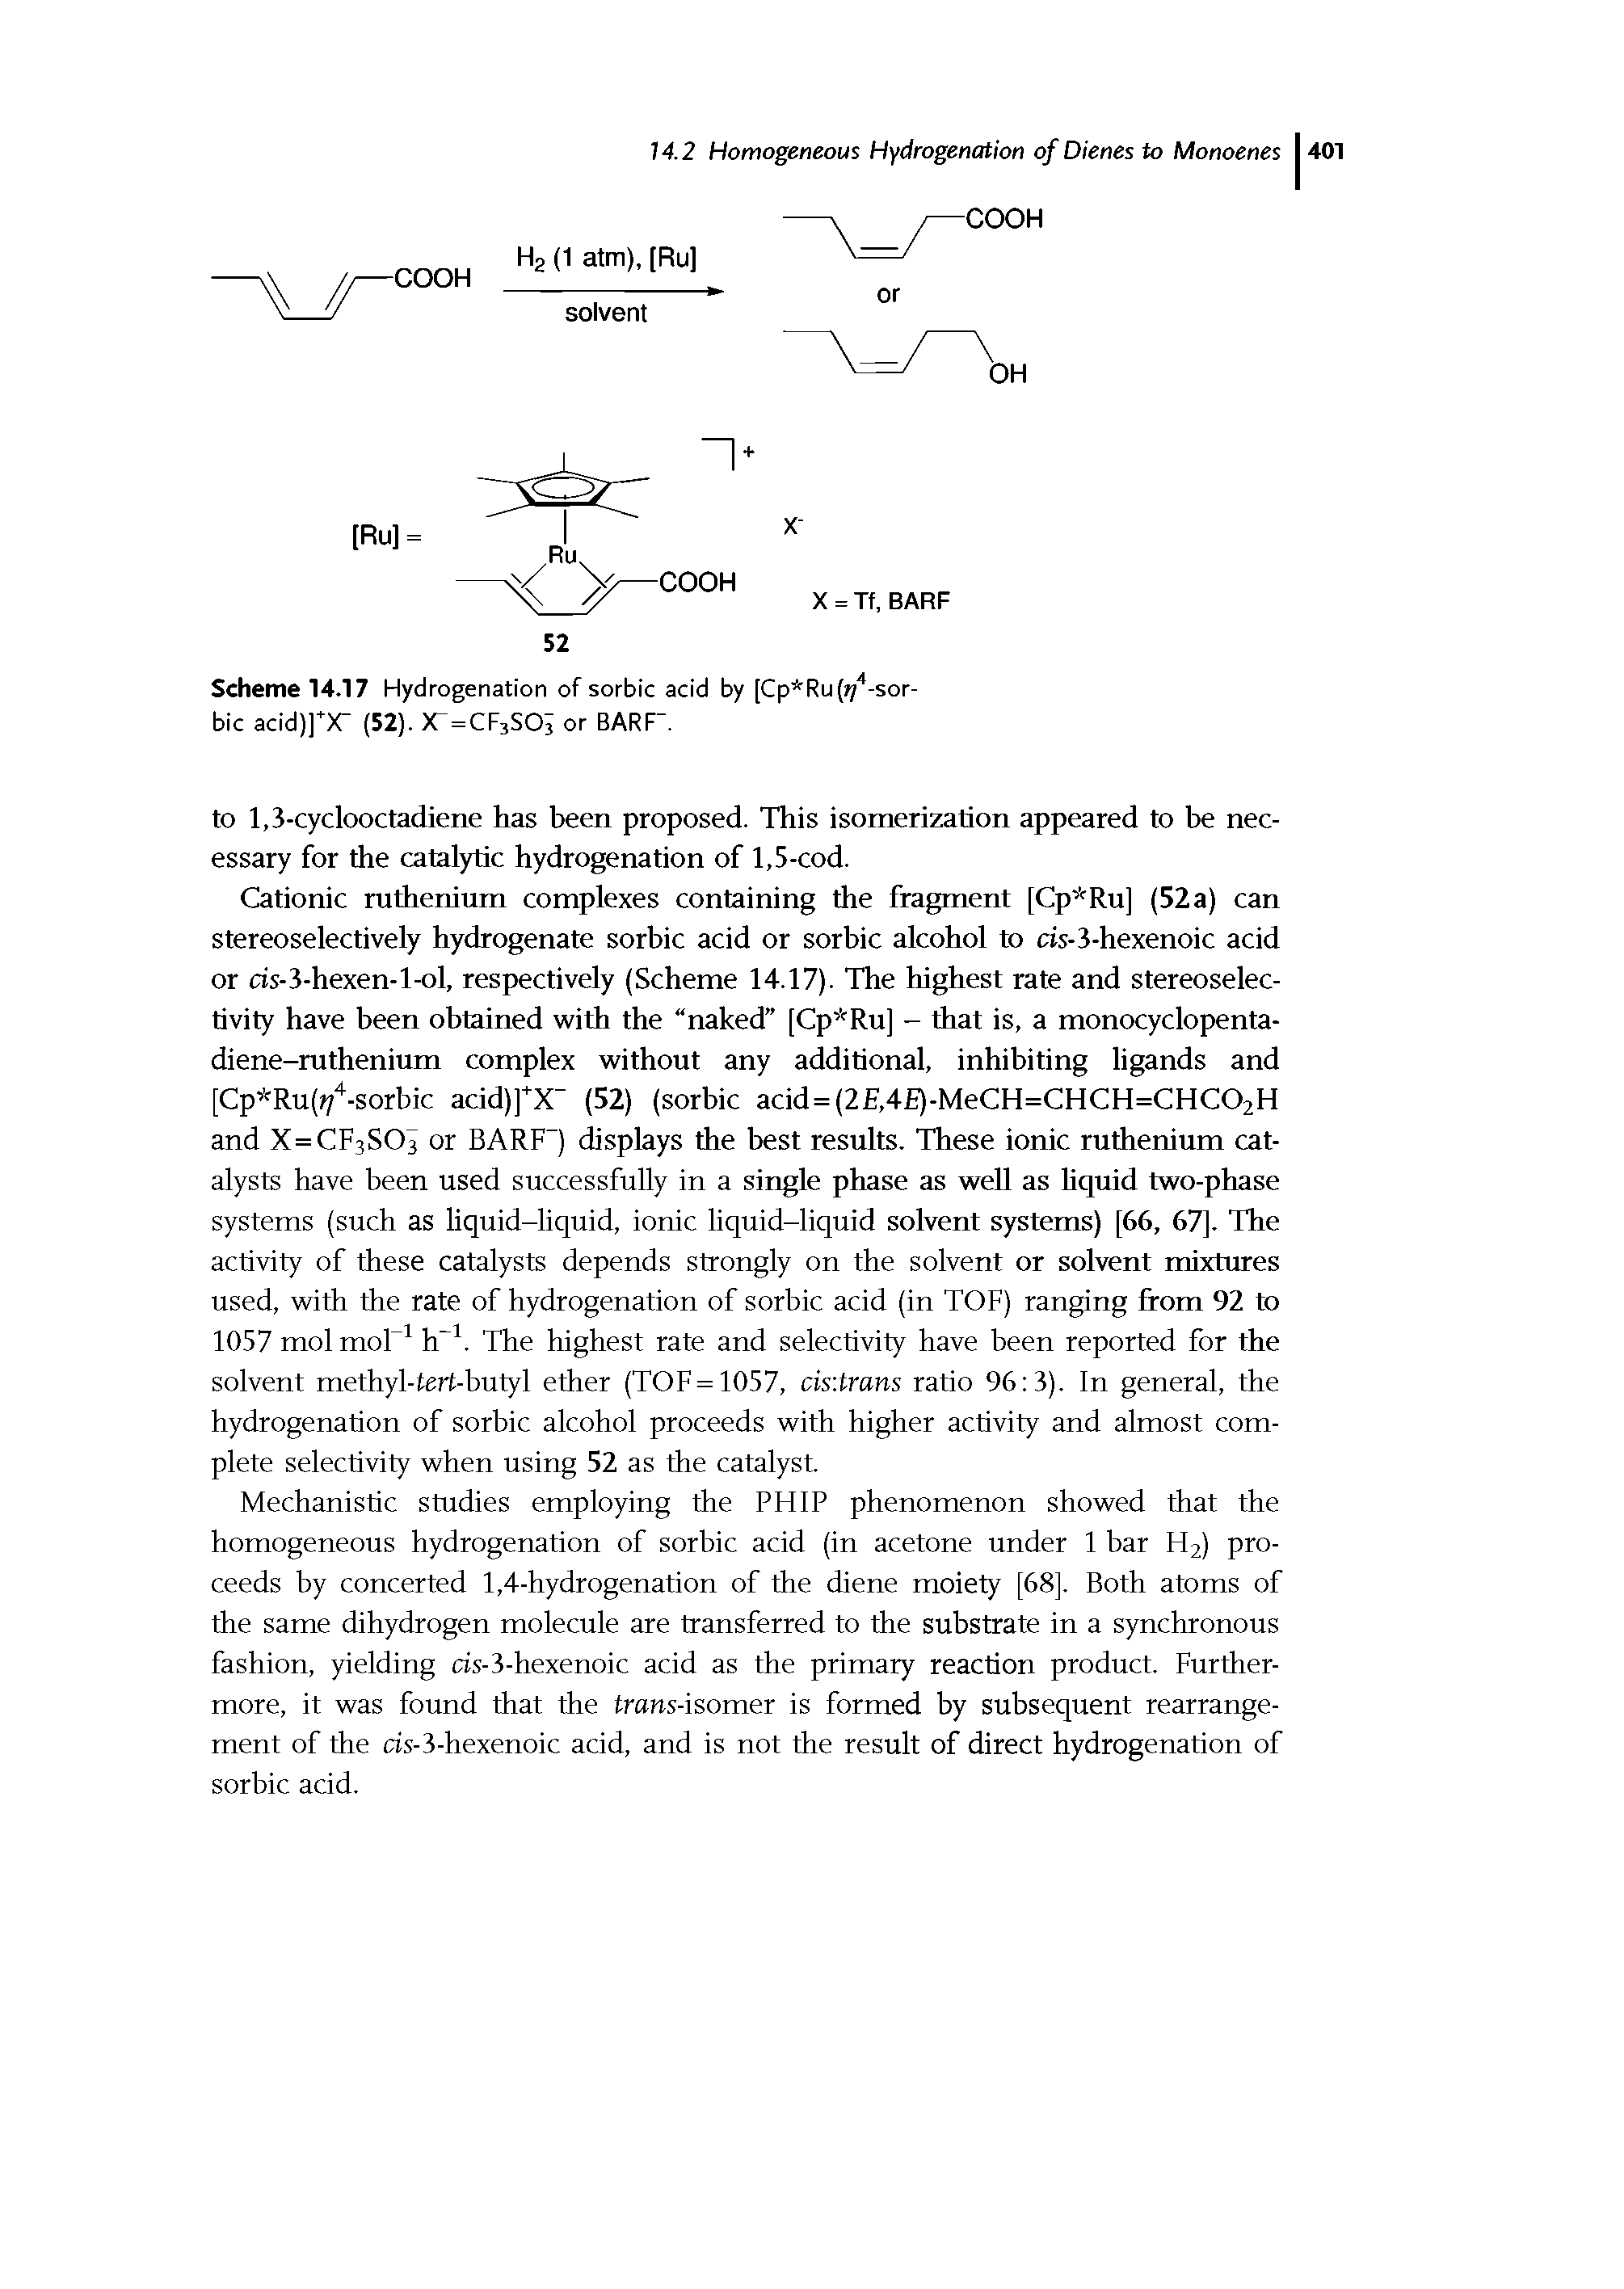 Scheme 14.17 Hydrogenation of sorbic acid by [Cp Ru( /4-sor-bic acid)]"X" (52). X"=CF3SOi or BARF".